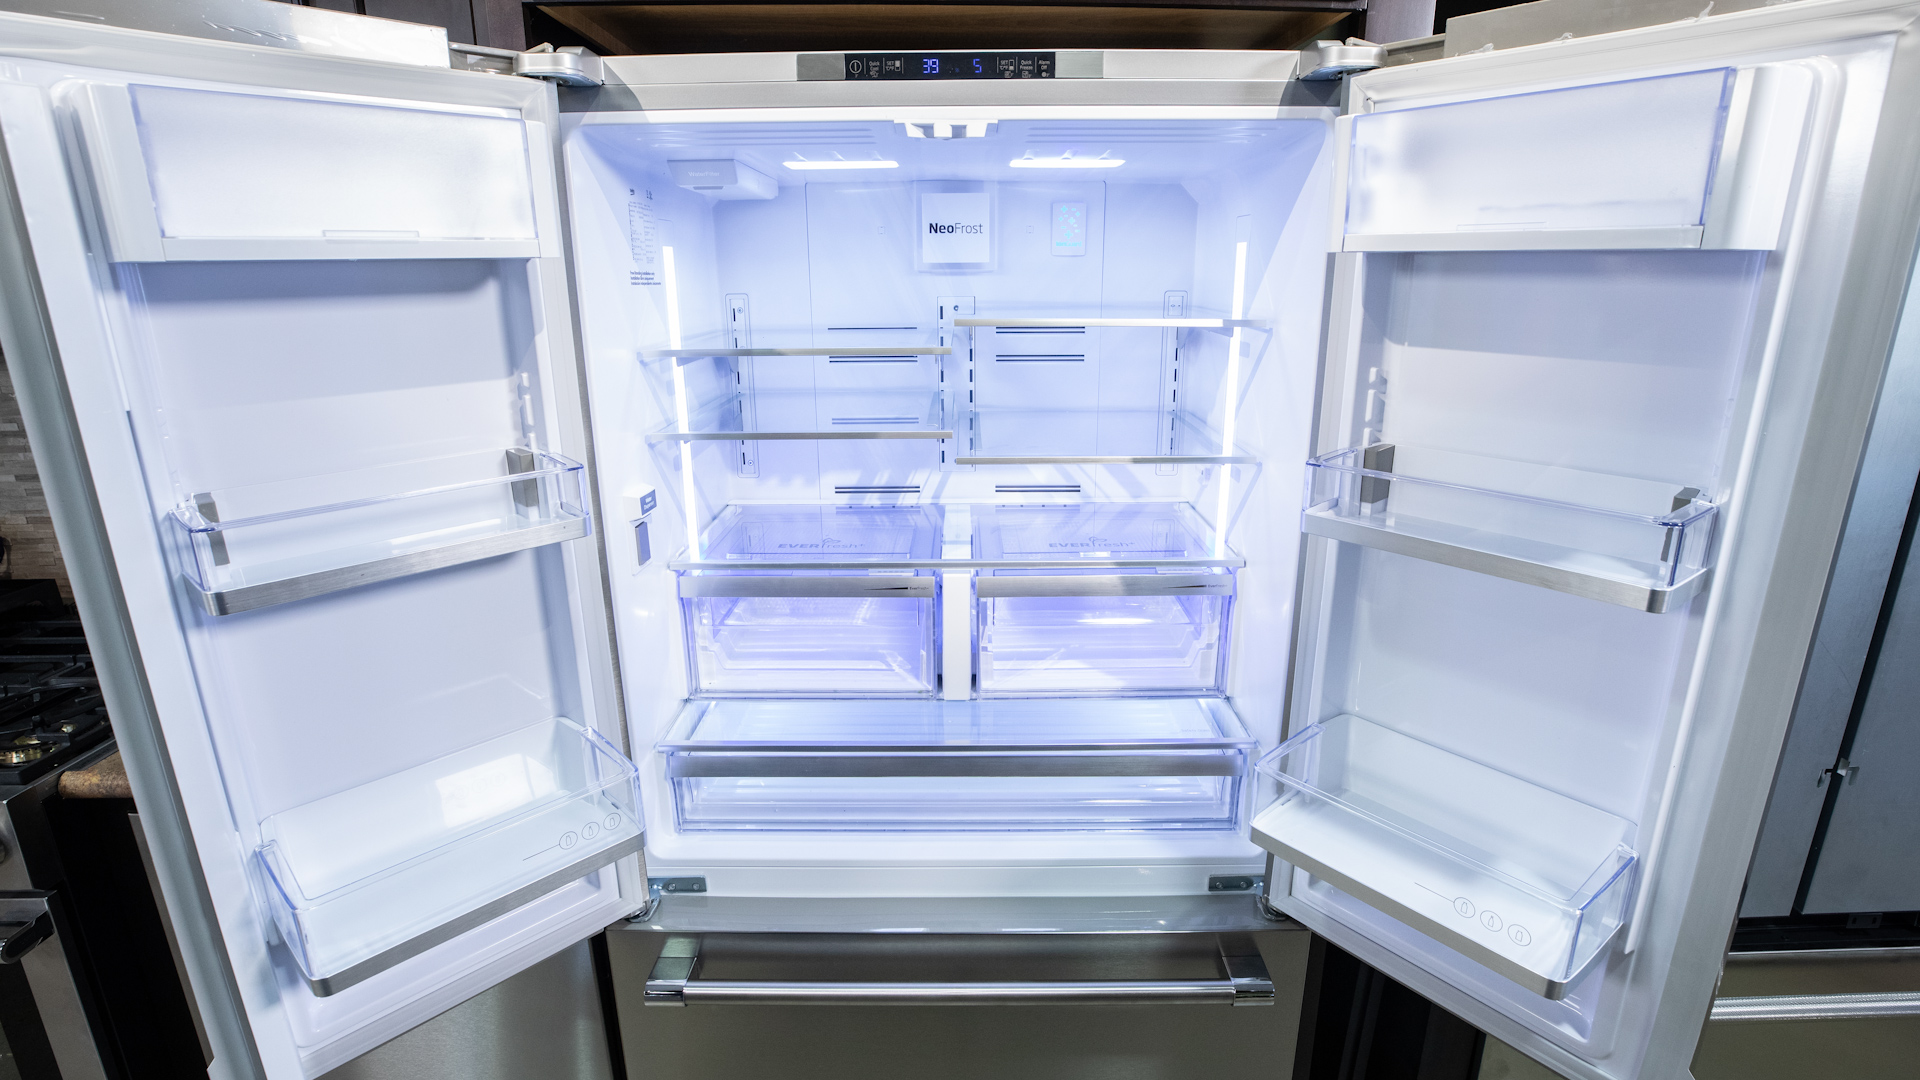 Beko 20 Cubic ft. Refrigerator vs 27 Cubic ft Refrigerator I Does Size Matter?